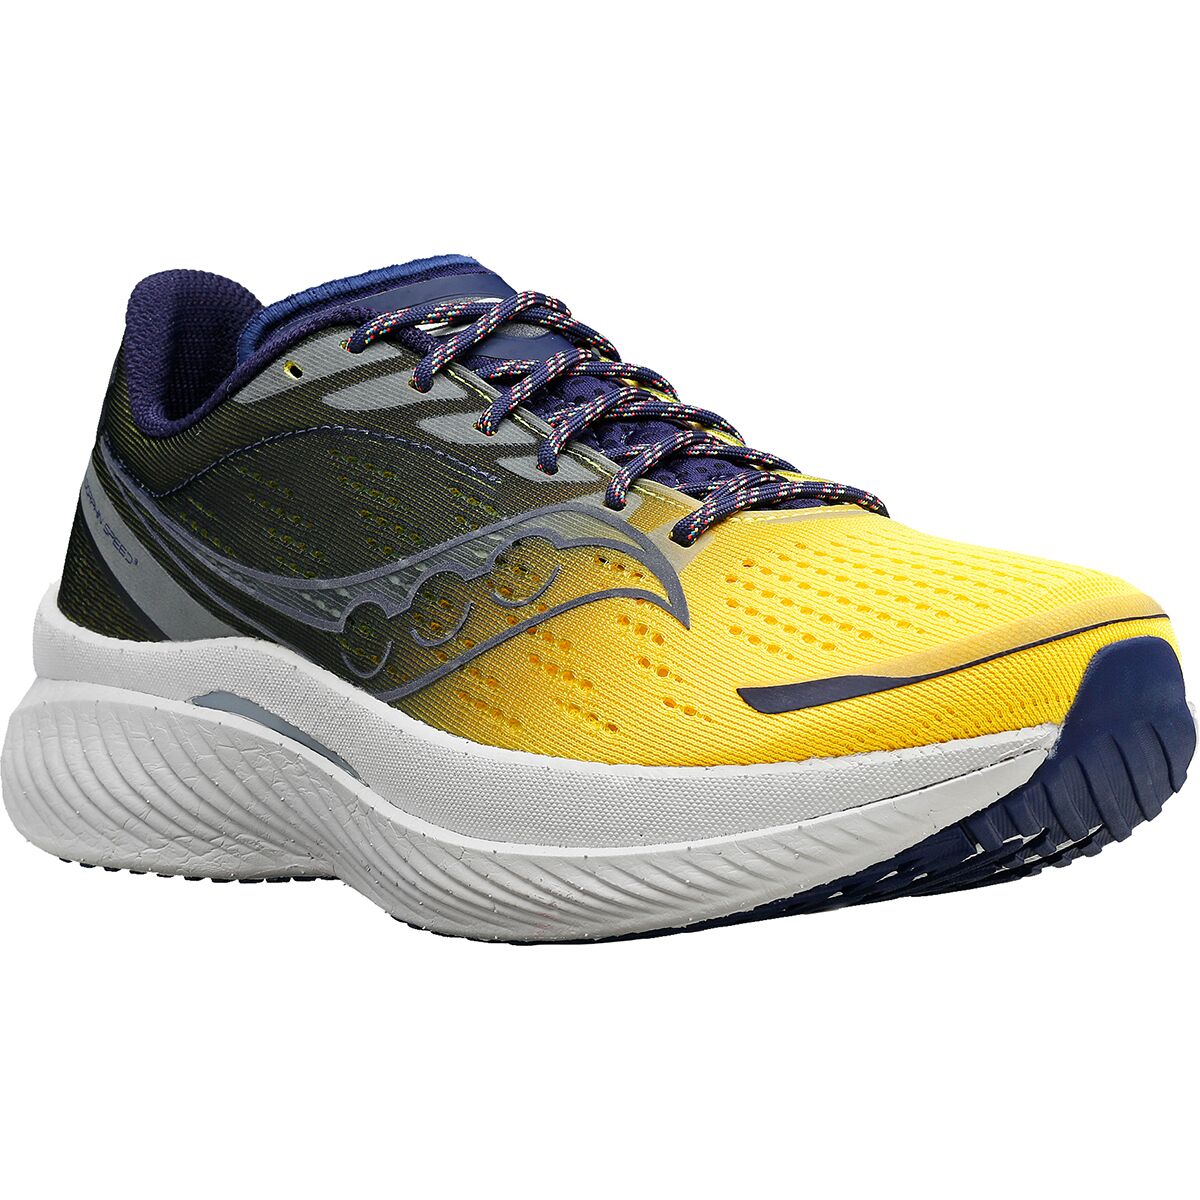 Saucony Endorphin Speed 3 Running Shoe - Women's - Footwear